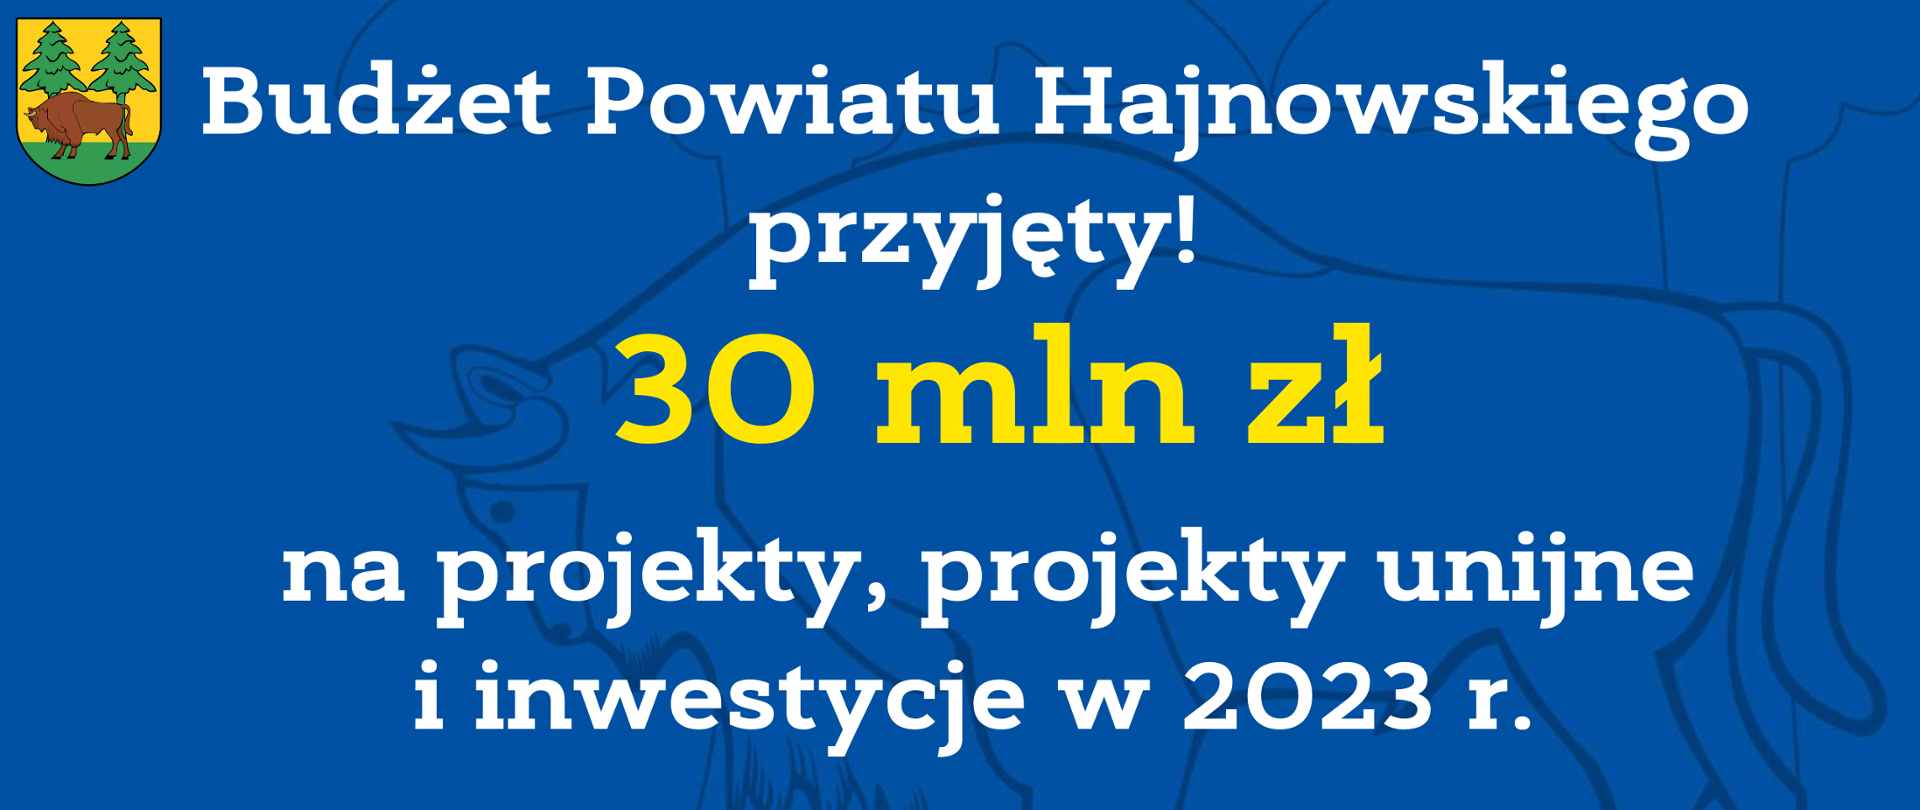 Budżet Powiatu Hajnowskiego przyjęty! 30 mln zł na projekty, projekty unijne i inwestycje w 2023 r. 